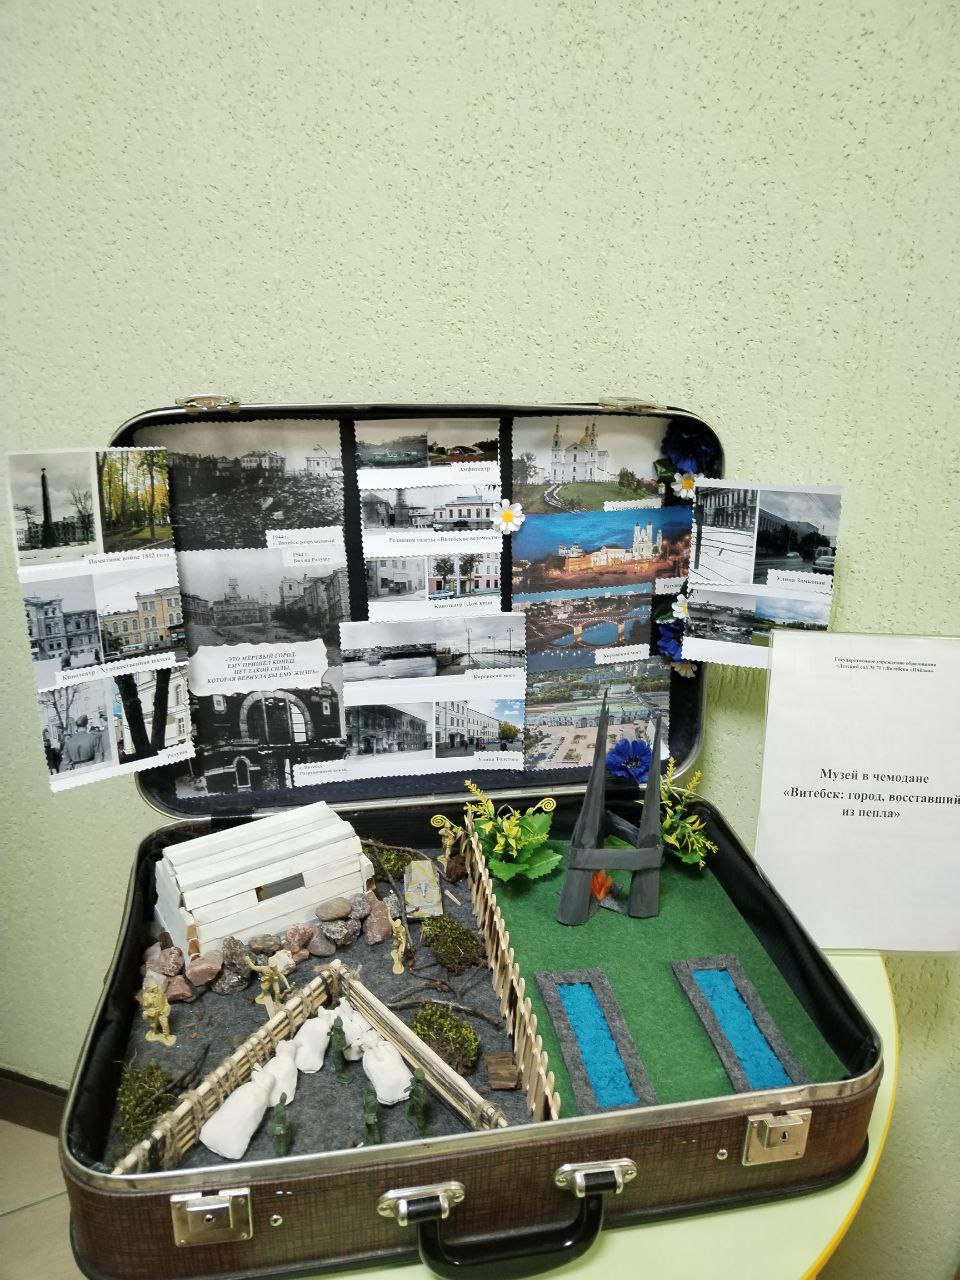 Мини-музей в чемодане "Витебск: город восставший из пепла"